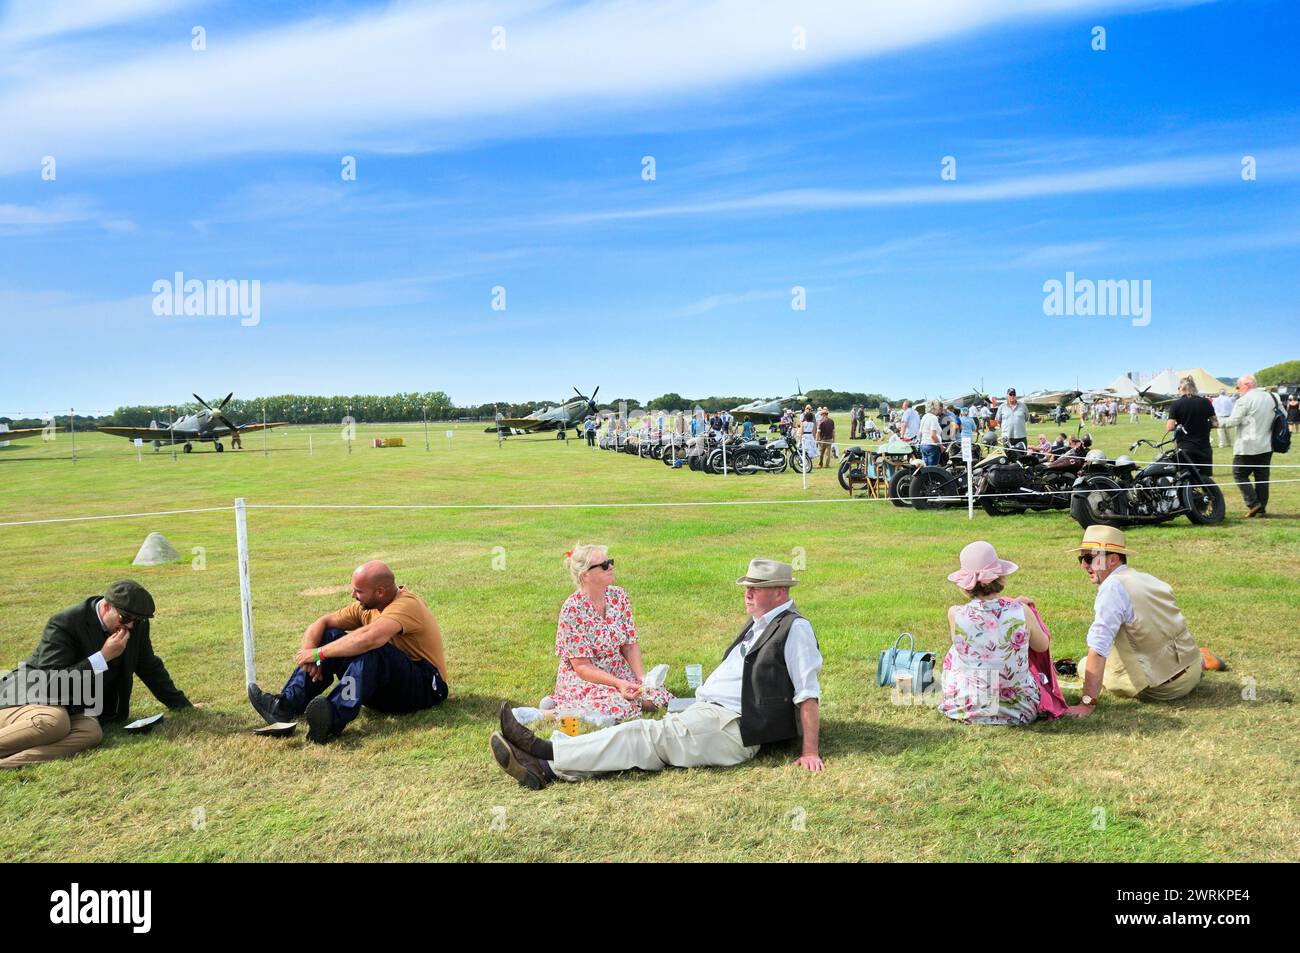 Persone sedute a rilassarsi sul campo d'aviazione in erba soleggiata vestite con abiti retrò al Goodwood Revival con motociclette classiche e aerei d'epoca, Regno Unito Foto Stock